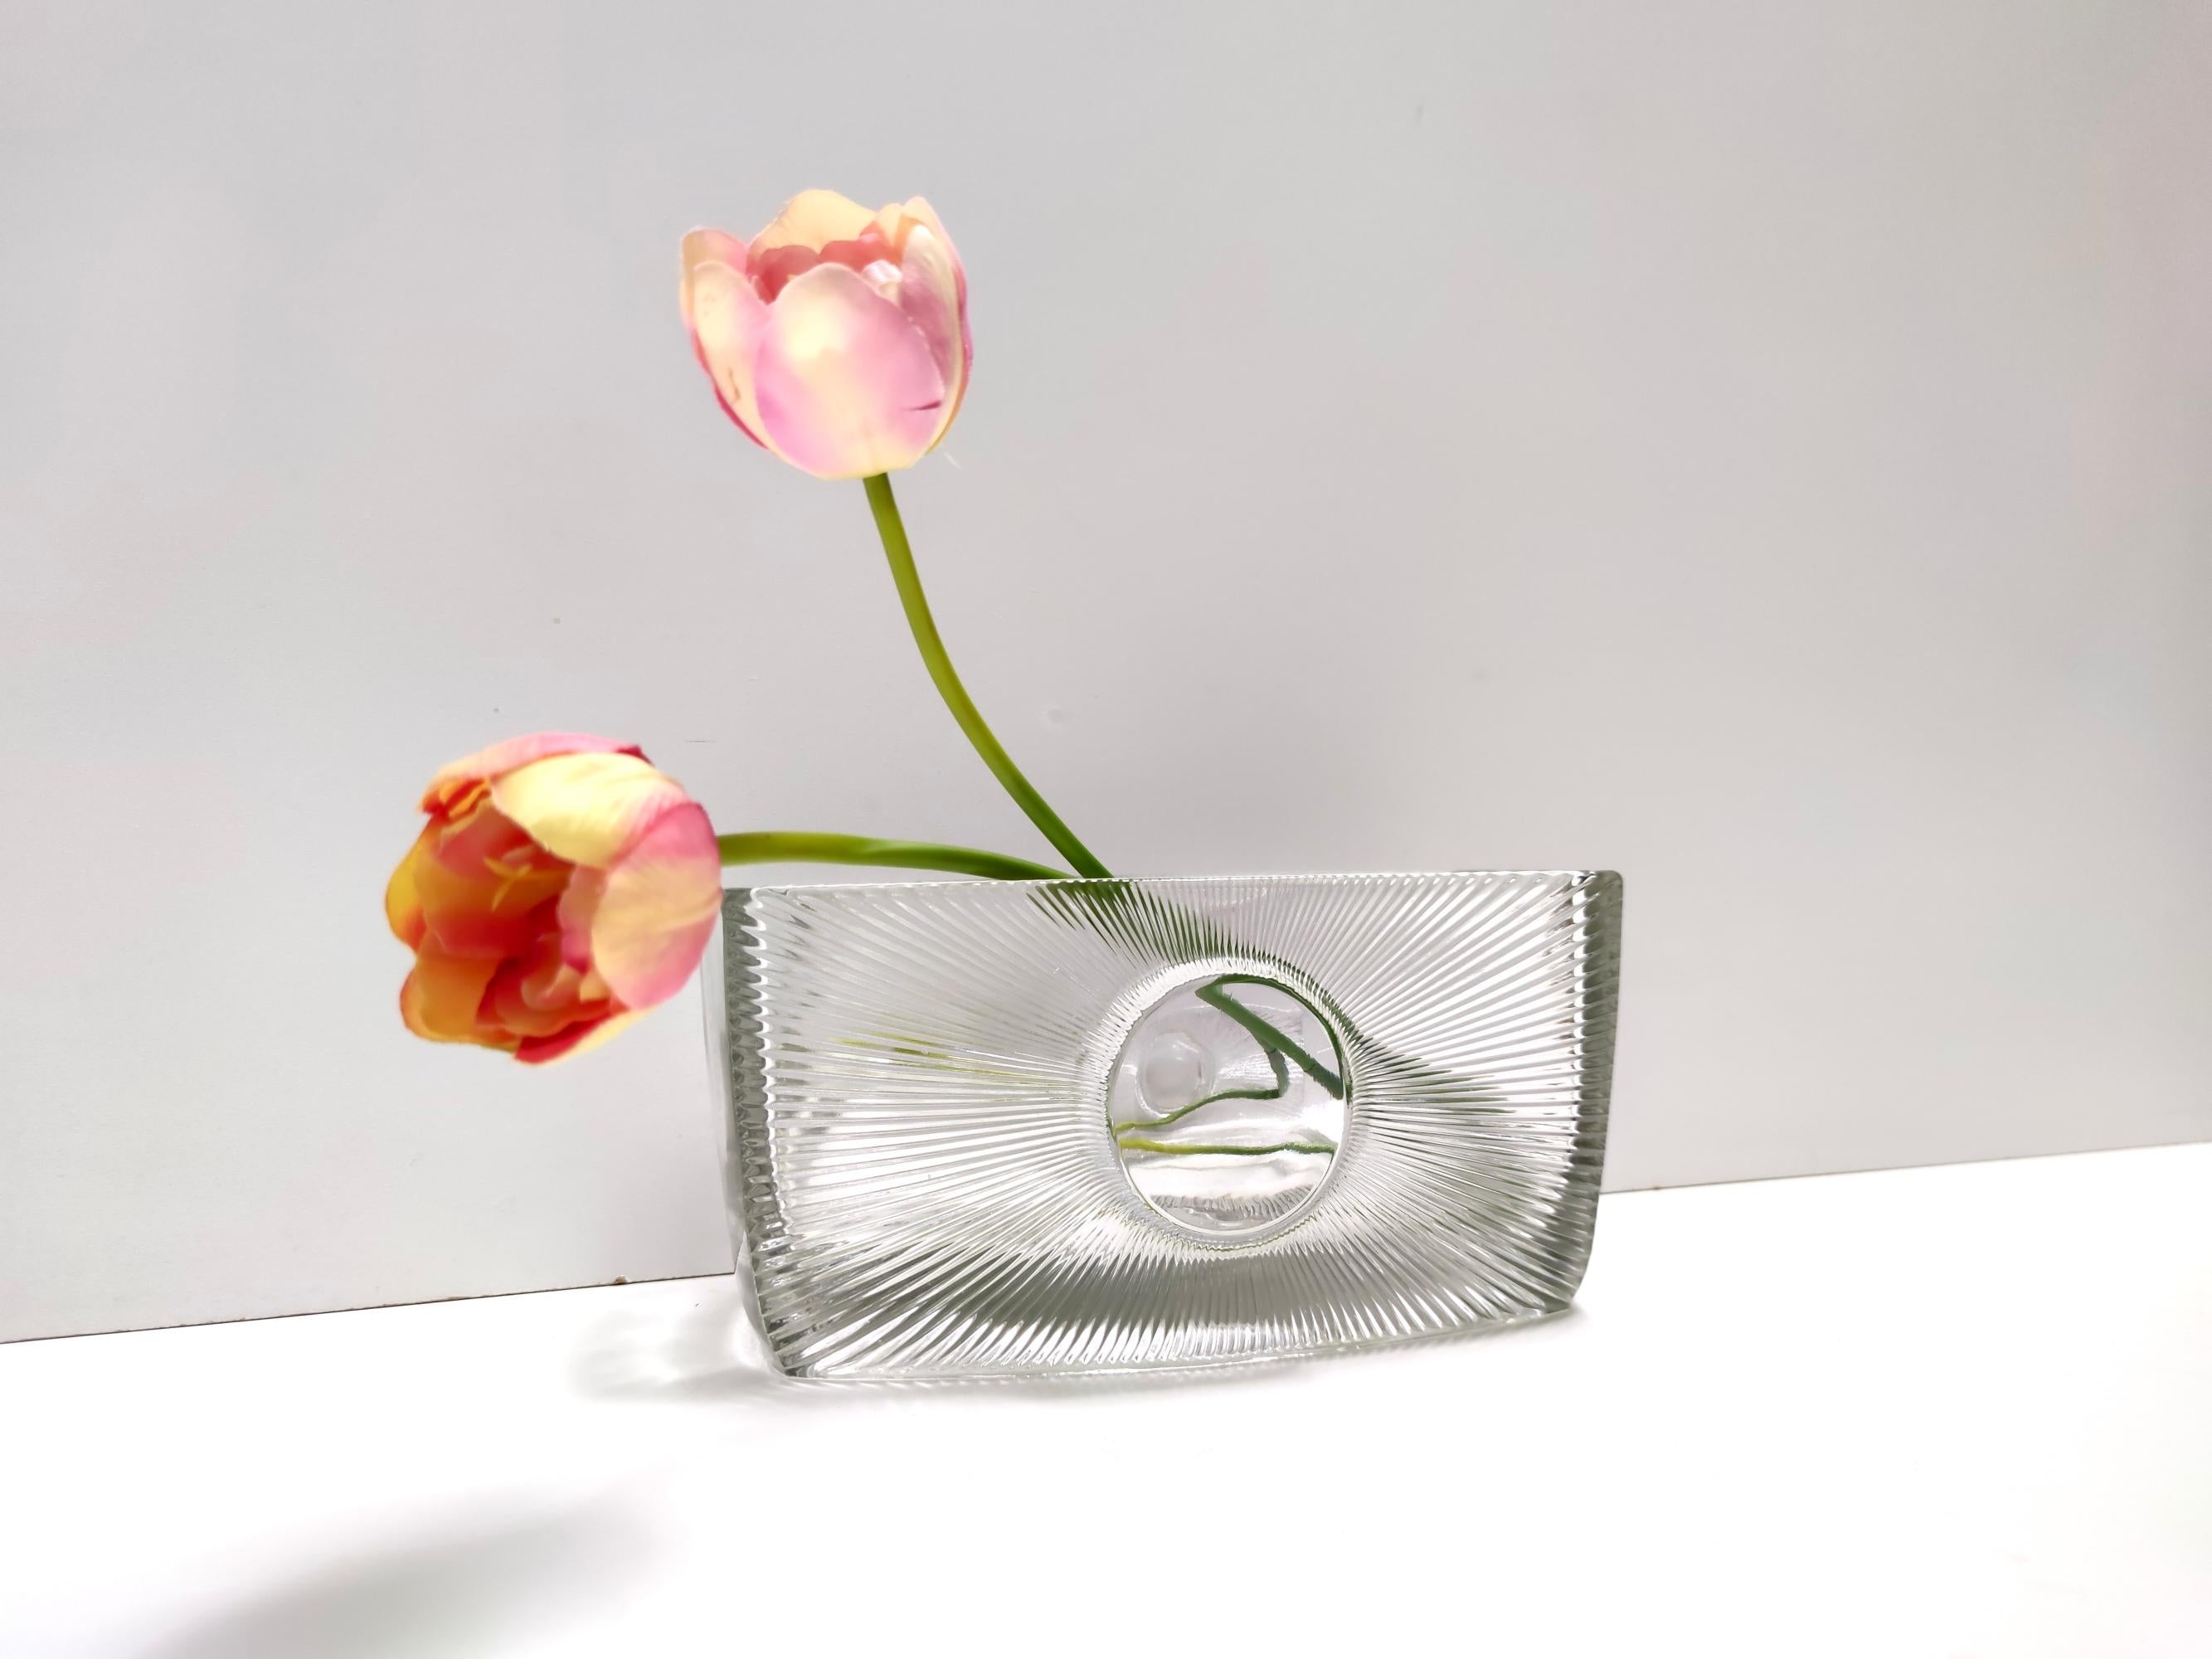 Fabriqué en République tchèque.
En 1969, Rudolf Jurnikl a conçu cette pièce en verre pressé pour Sklárna Libochovice.
Son design présente des formes dynamiques et des courbes vivantes. Dans les années 70, Jurnikl a utilisé un motif floral.
L'icône